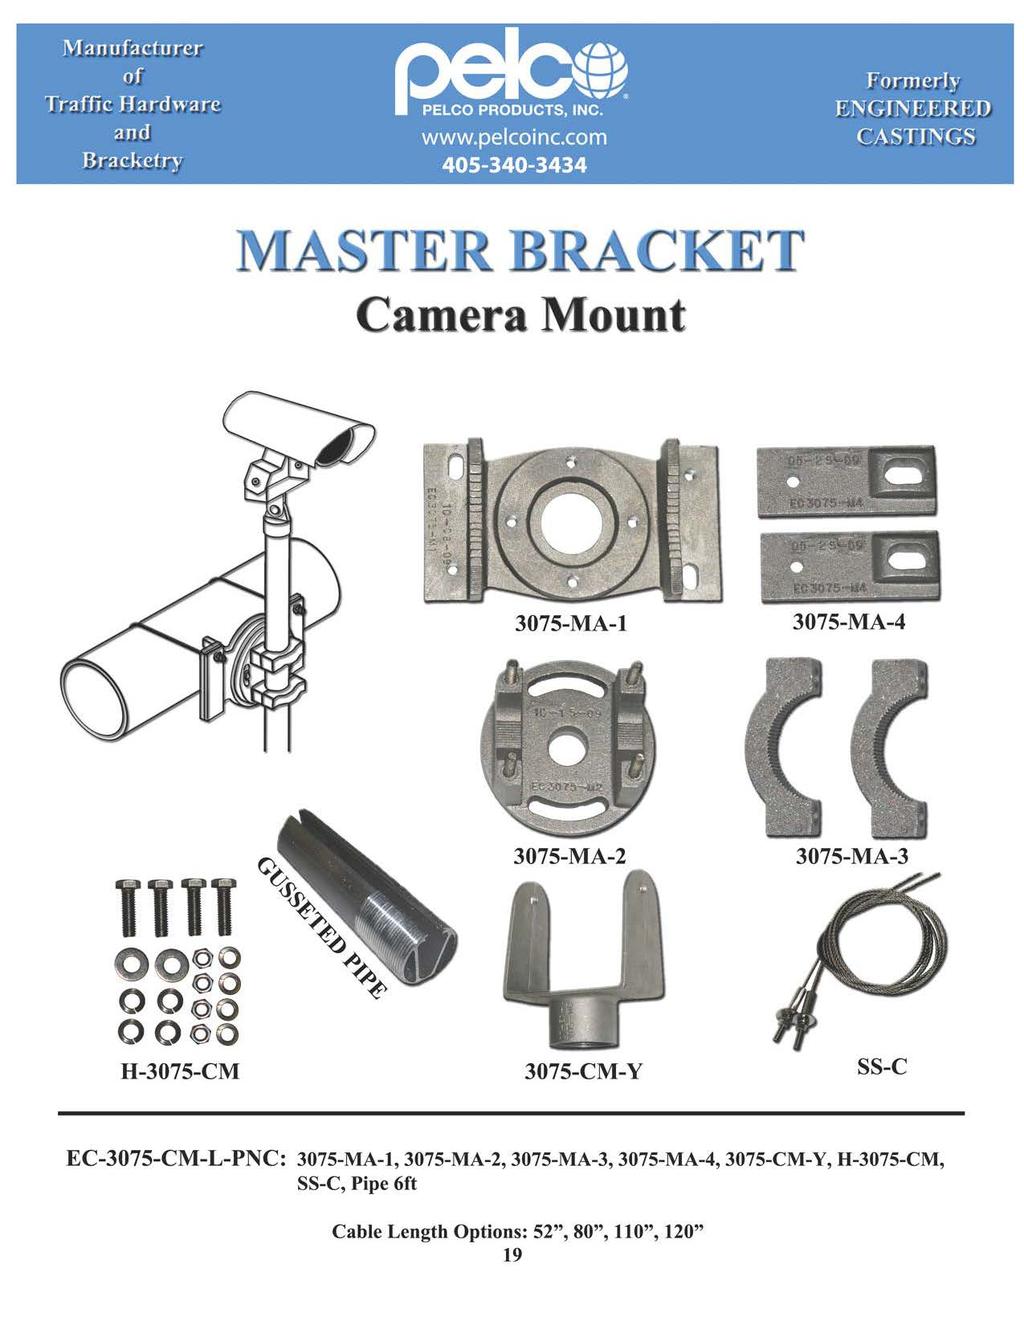 Manufacturer Camera Mount 375-MA-1 375-MA-4 TTTT oogg OO Jo OO JO H-375-CM 375-MA-2 375-CM-Y 375-MA-3 SS-C